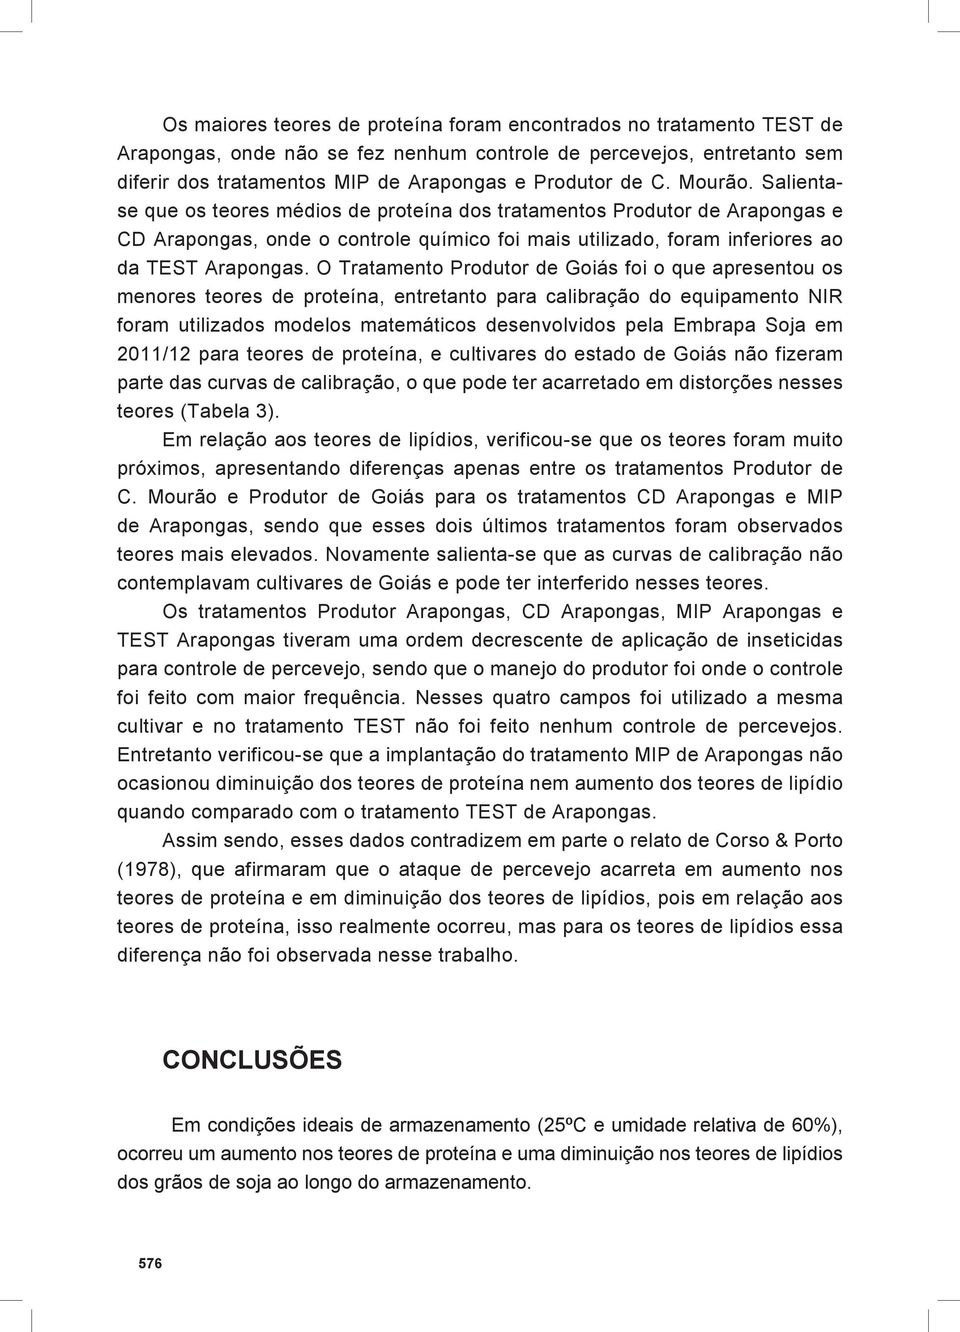 O Tratamento Produtor de Goiás foi o que apresentou os menores teores de proteína, entretanto para calibração do equipamento NIR foram utilizados modelos matemáticos desenvolvidos pela Embrapa Soja